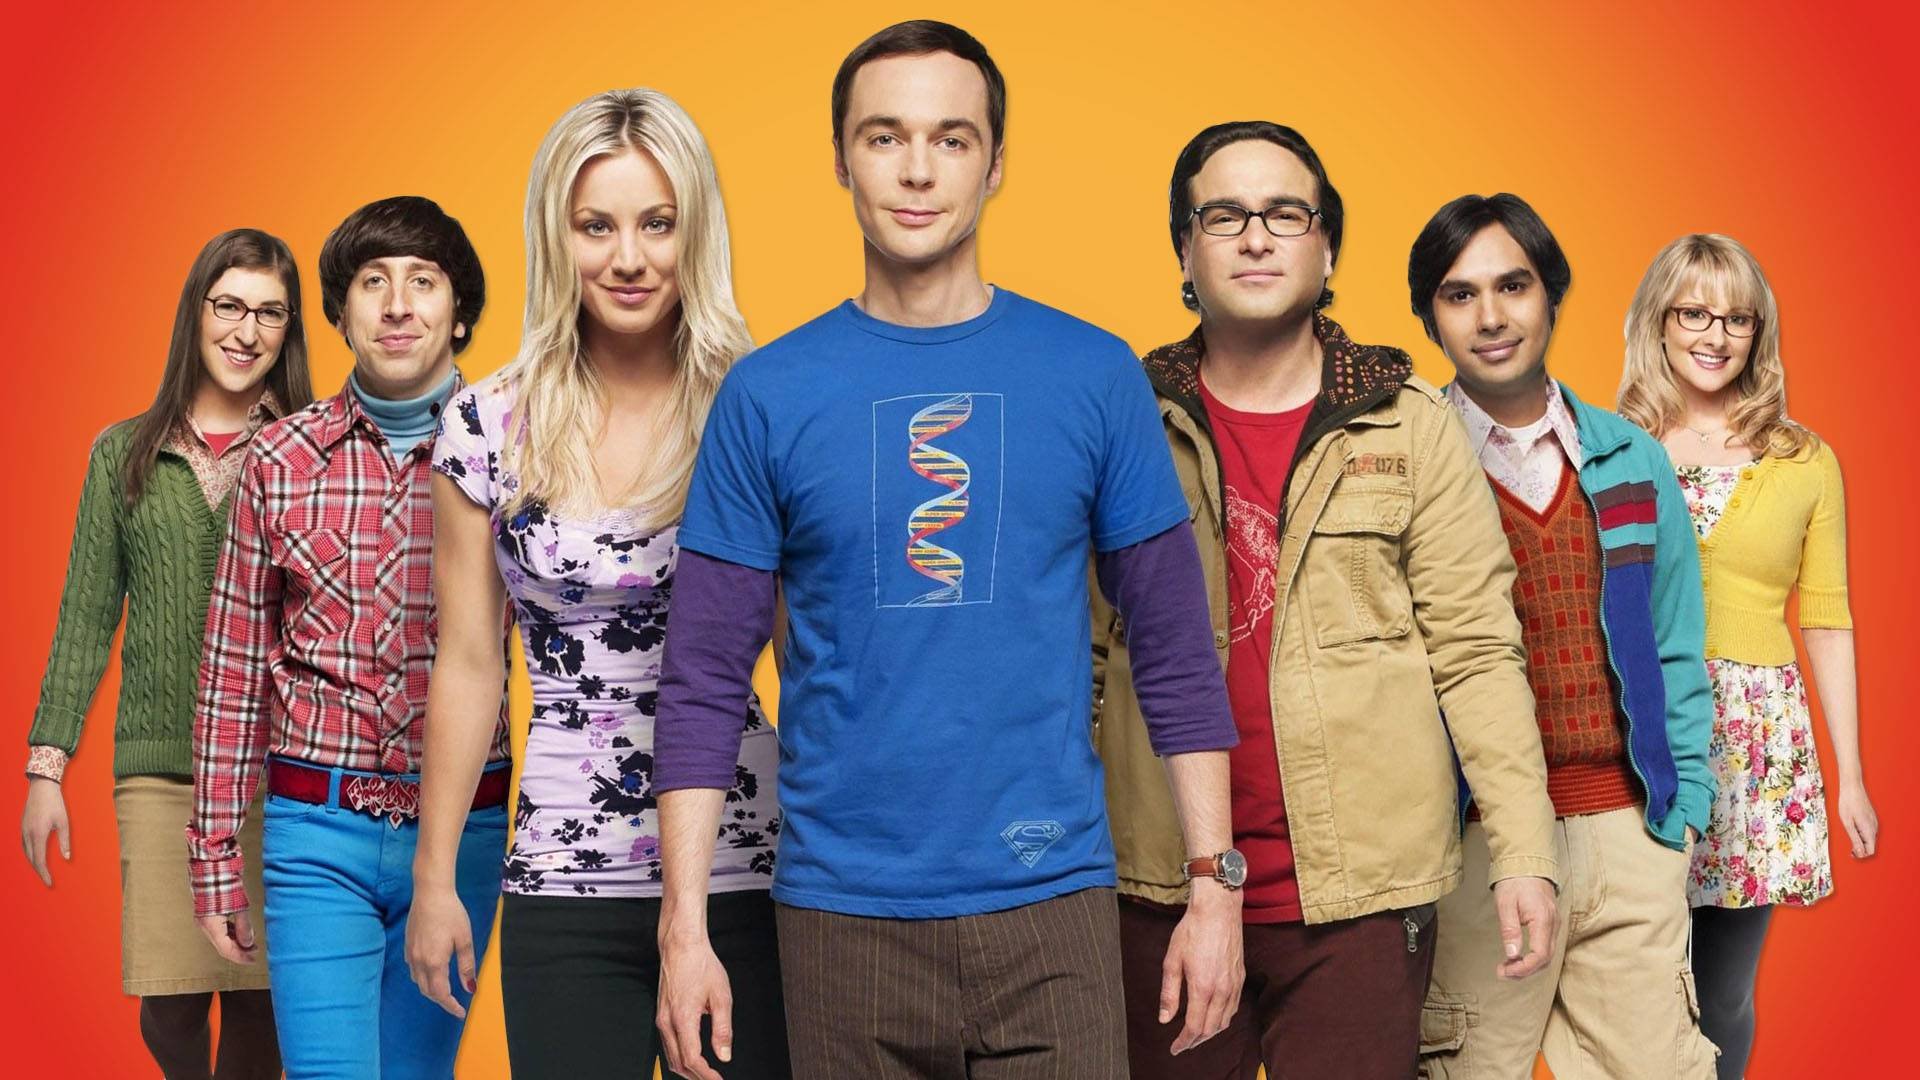 დიდი აფეთქების თეორია სეზონი 2 / The Big Bang Theory Season 2 ქართულად